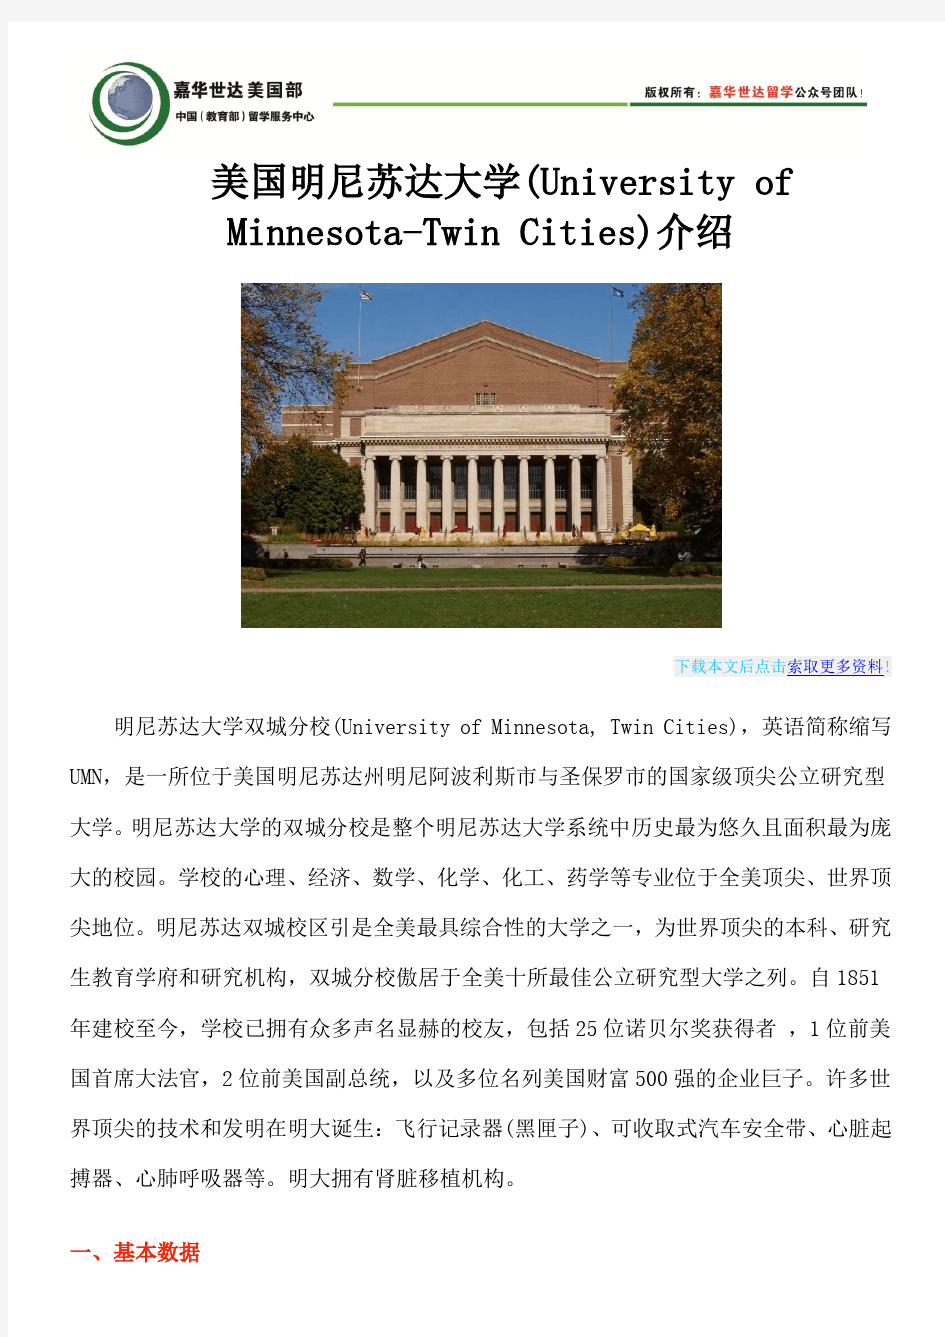 美国明尼苏达大学(University of Minnesota-Twin Cities)介绍